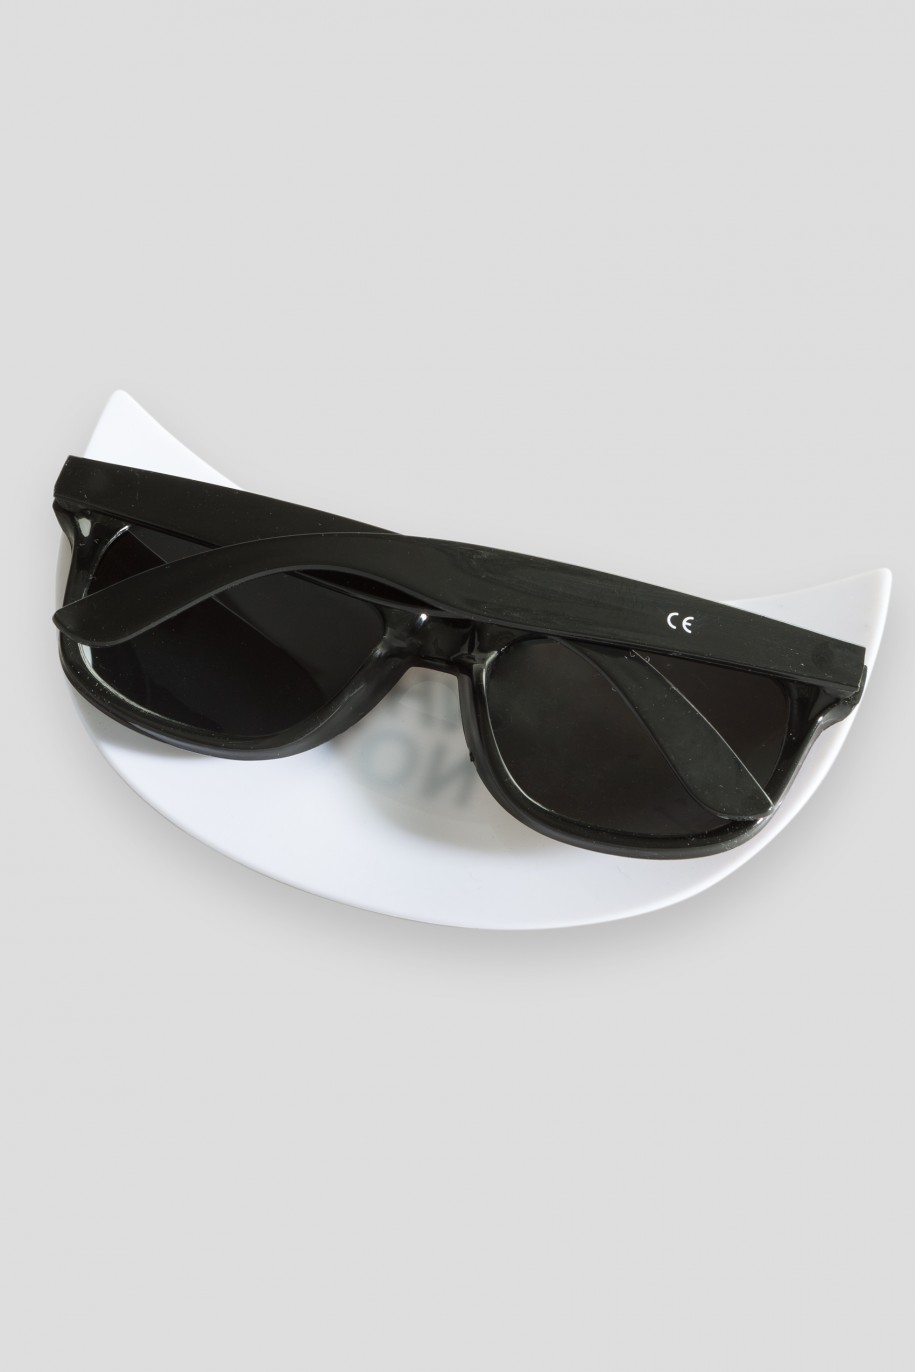 Czarne okulary przeciwsłoneczne z daszkiem - 34863